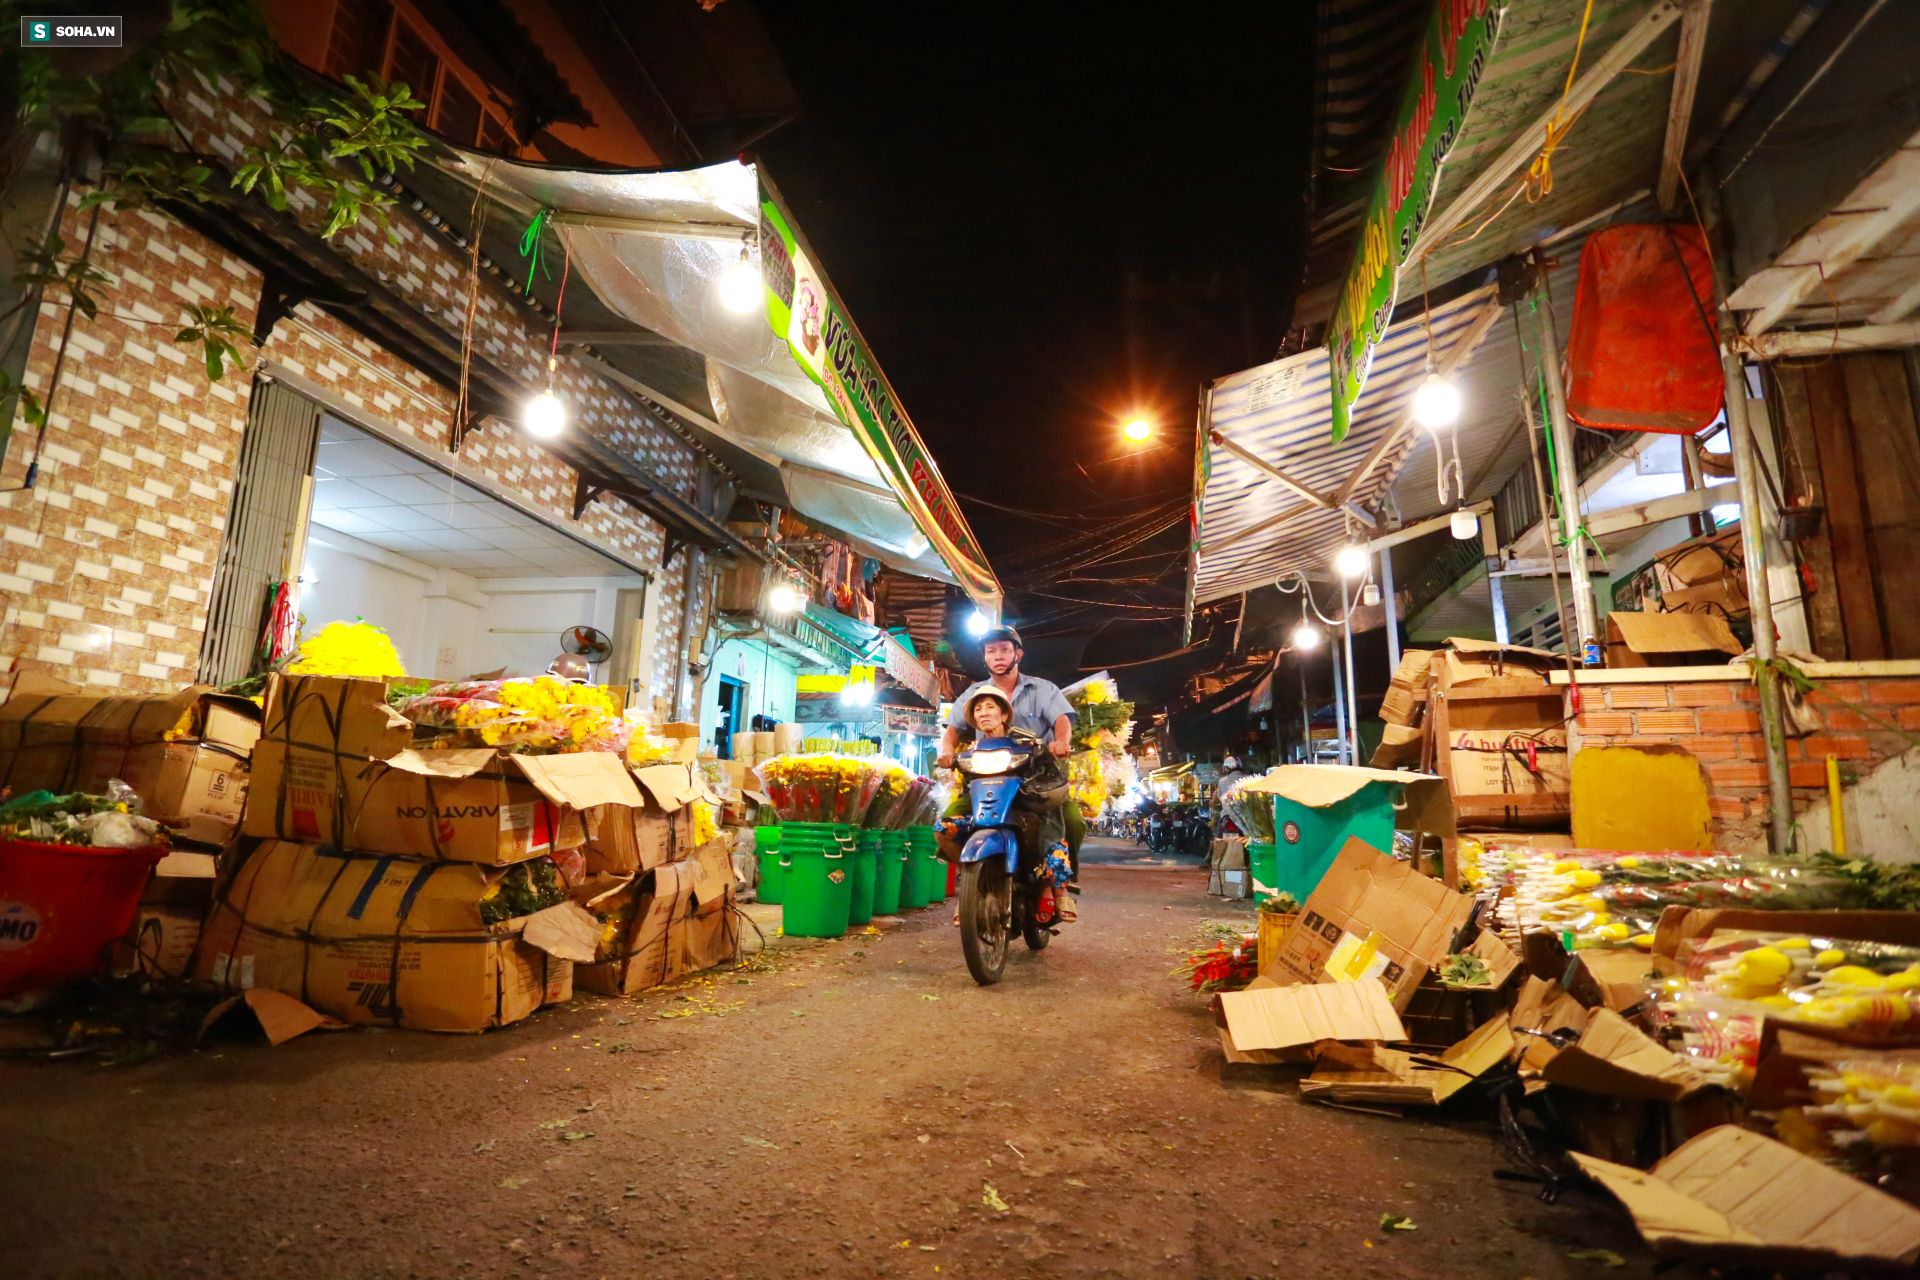 Chợ hoa 30 năm không ngủ ở Sài Gòn nhộn nhịp lúc 2 giờ sáng đón ngày 8/3 - Ảnh 14.